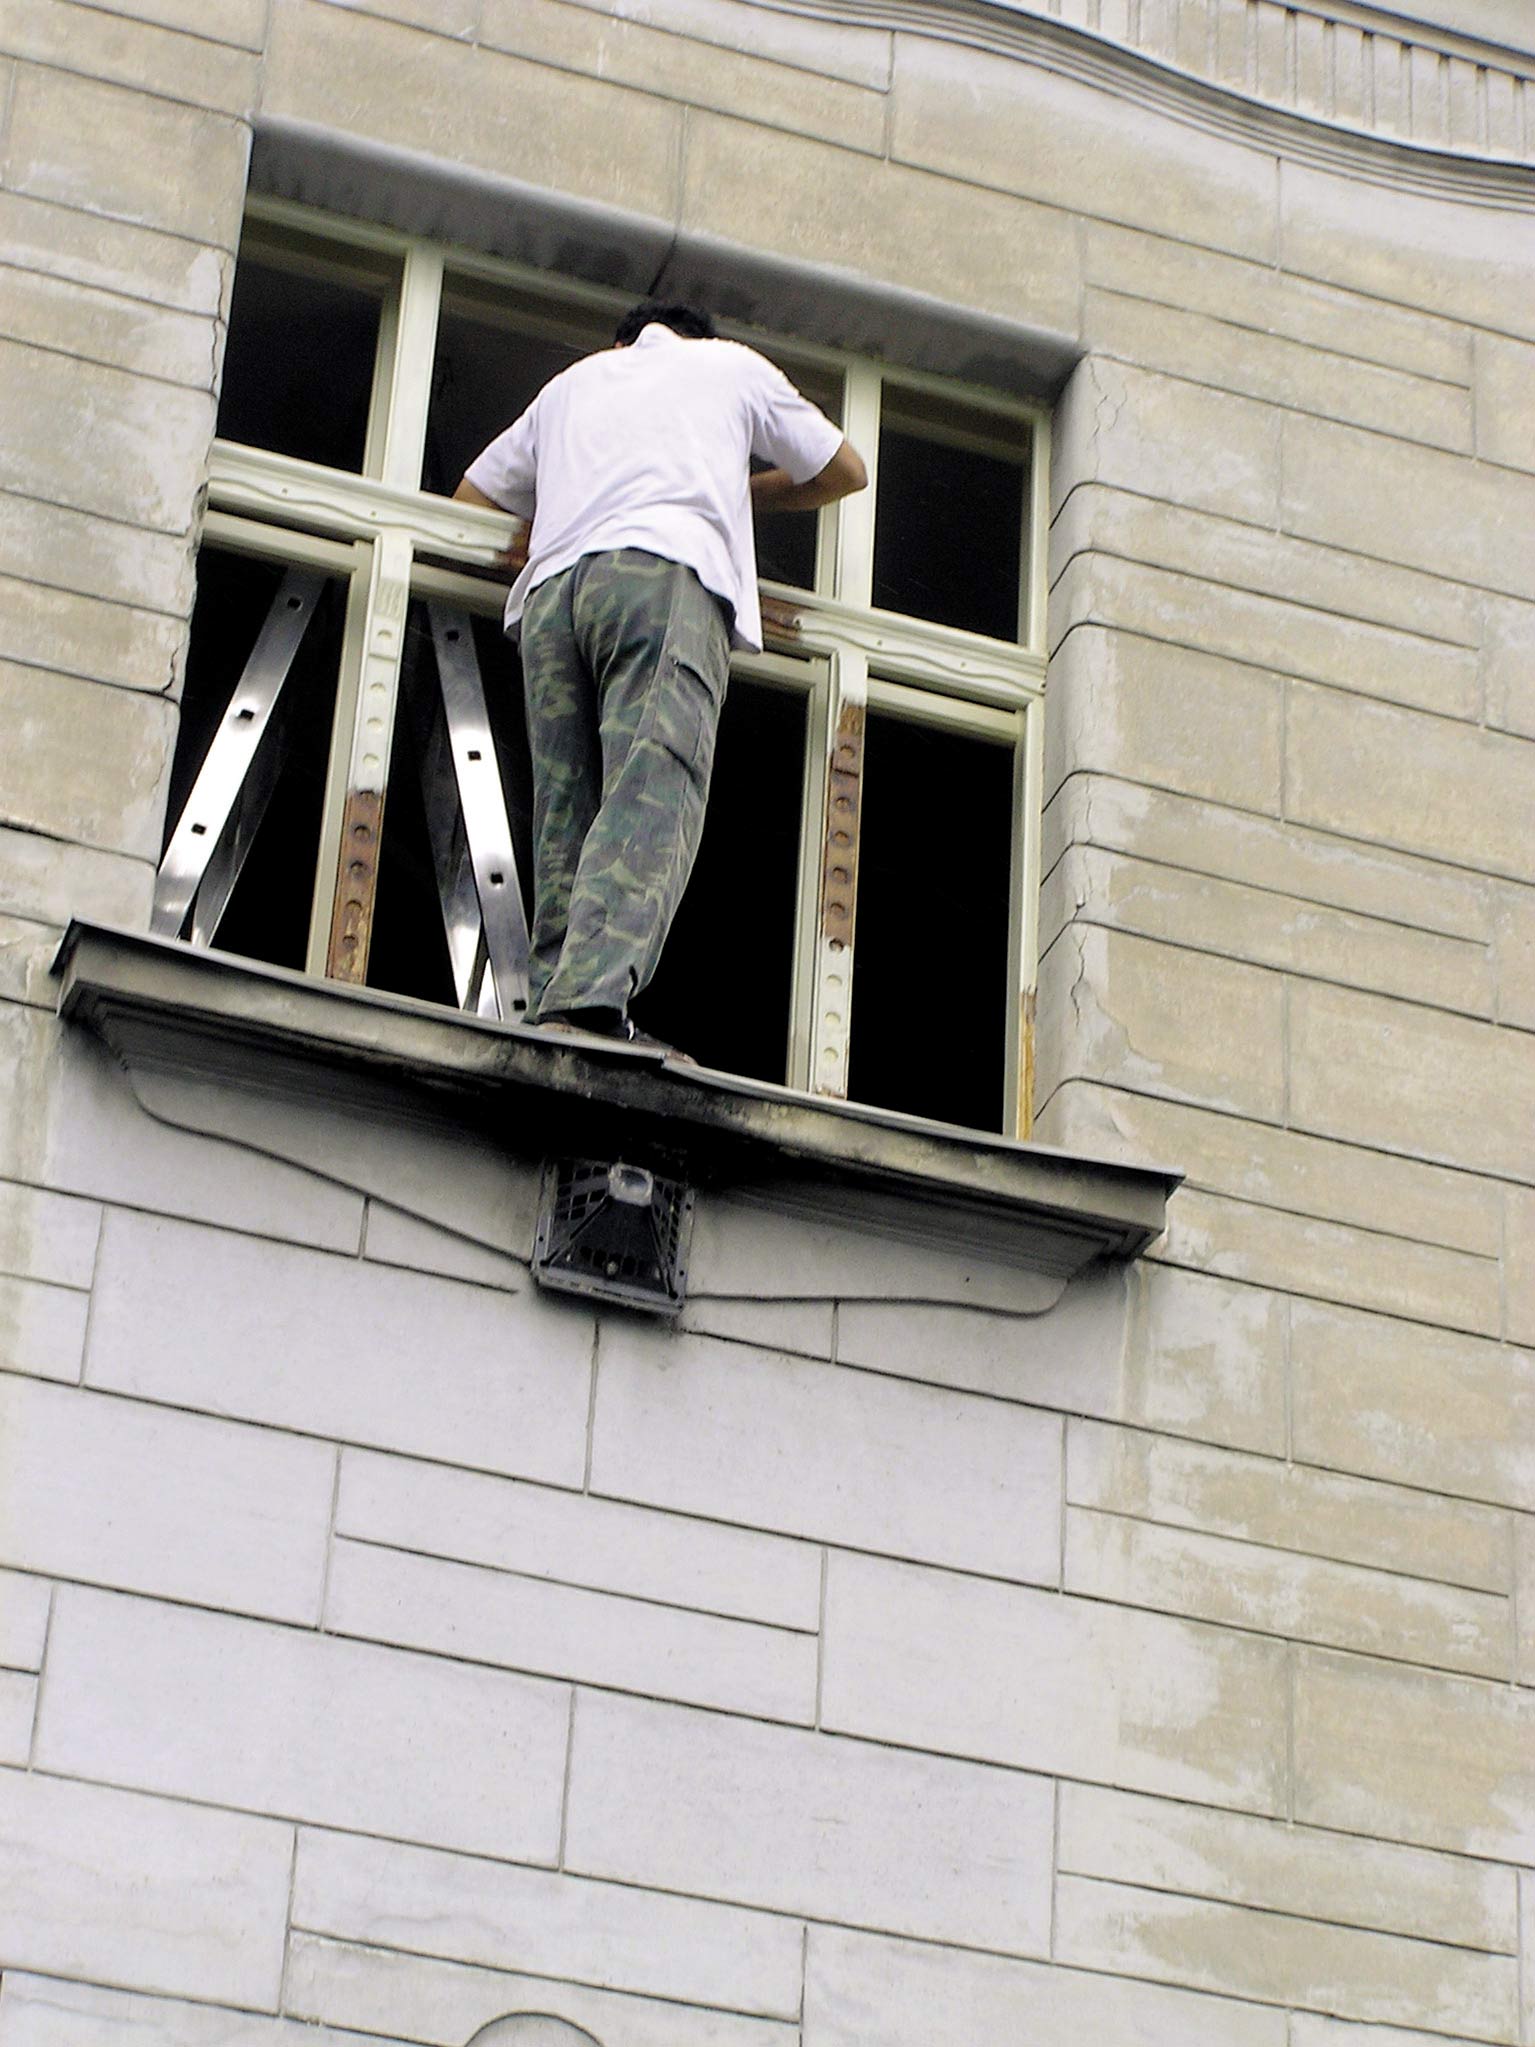 Obr. 1 Práca na okennom parapete bez zabezpečenia pracovníka proti pádu